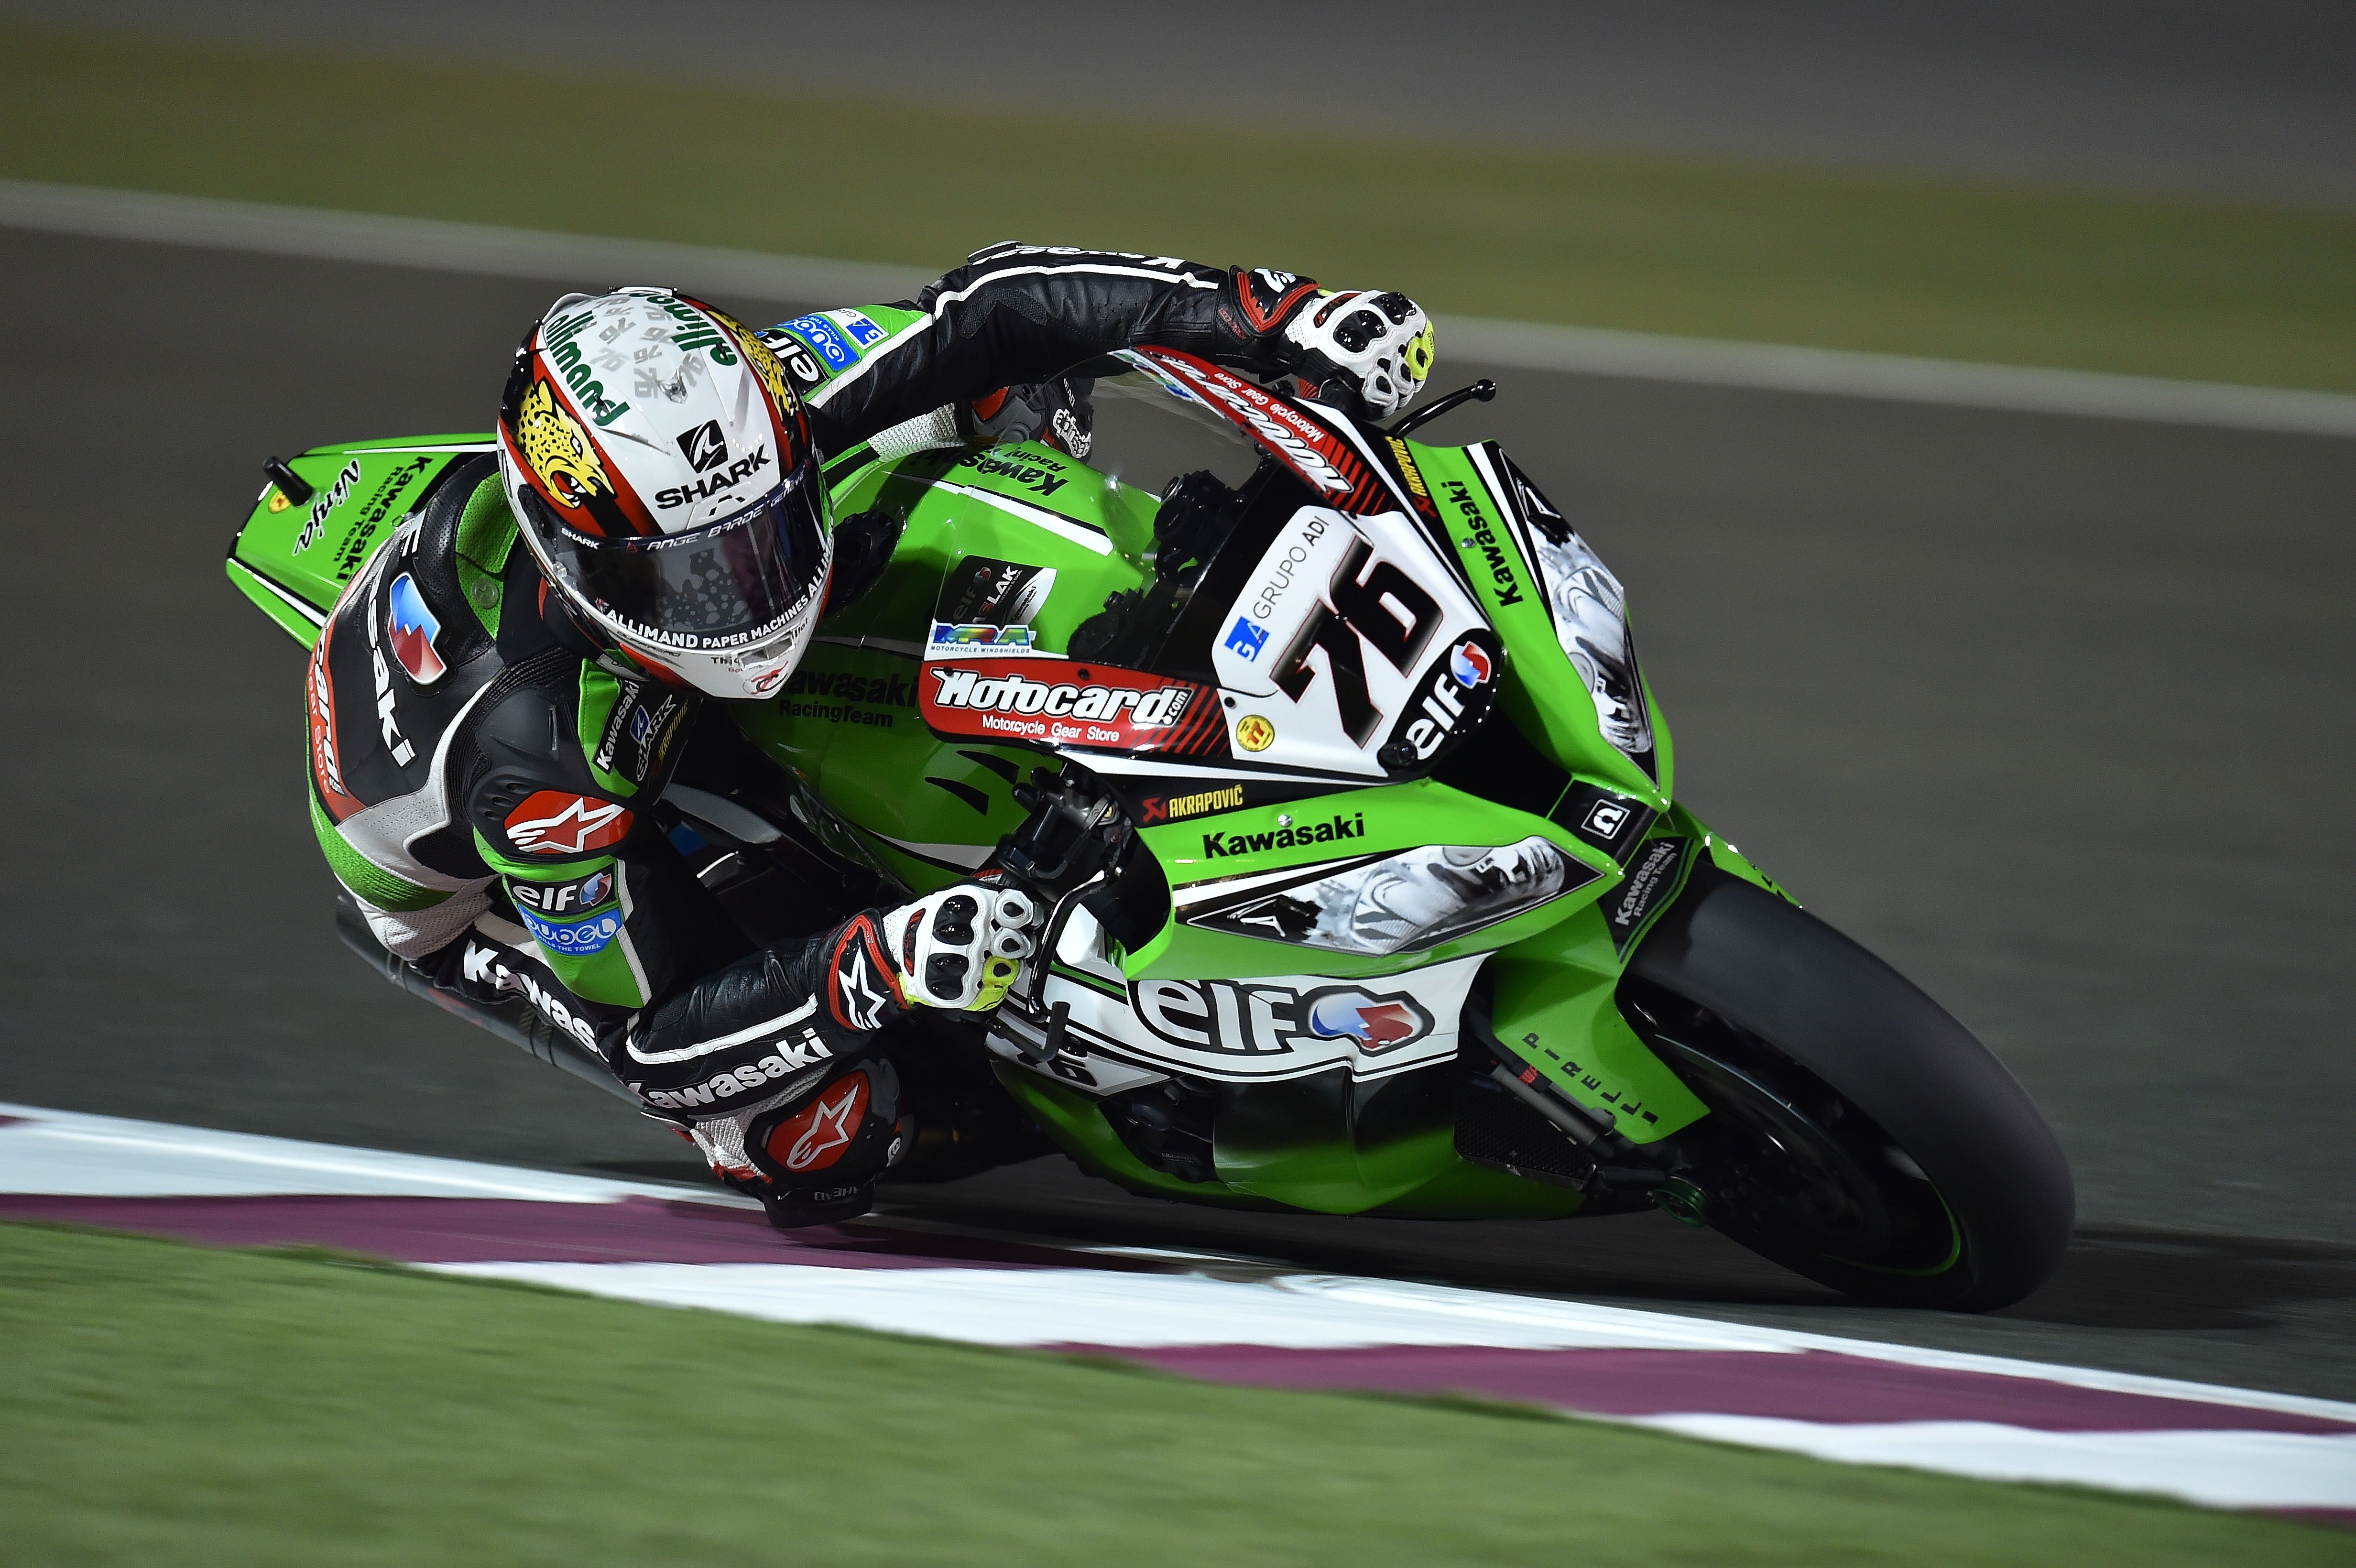 Green and Black #76 Kawasaki Motogp Rider, Action, Extreme, Fast, Motorcycle, HQ Photo